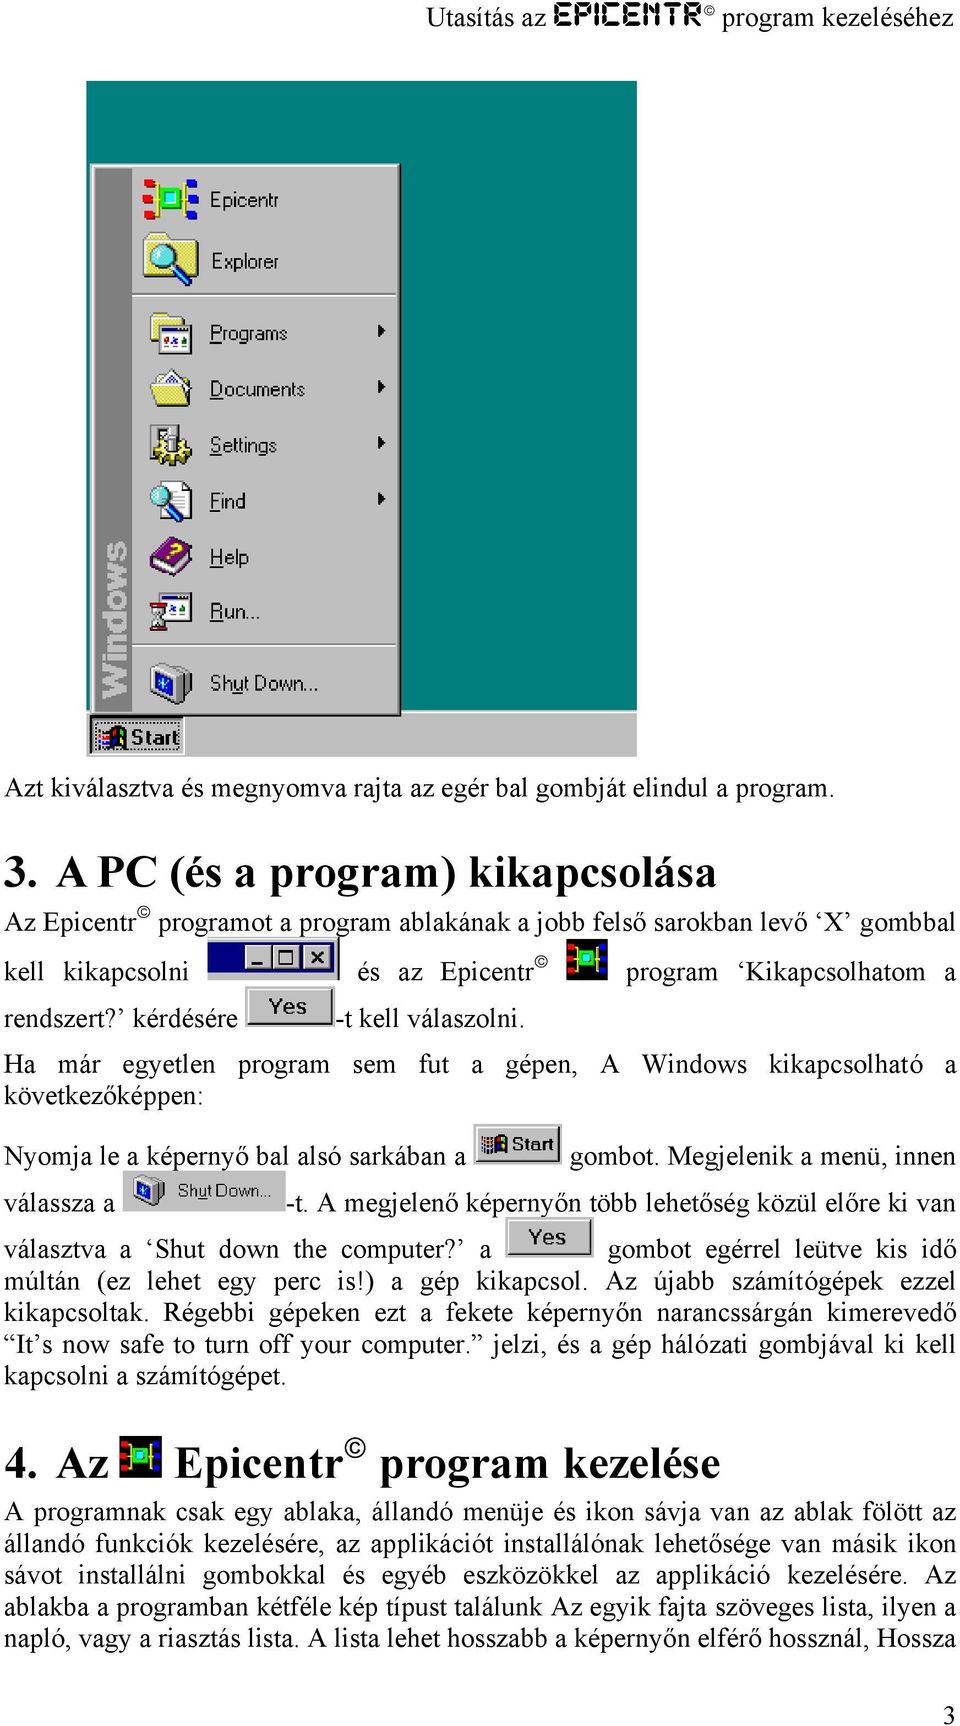 Utasítás az Epicentr program kezeléséhez - PDF Ingyenes letöltés